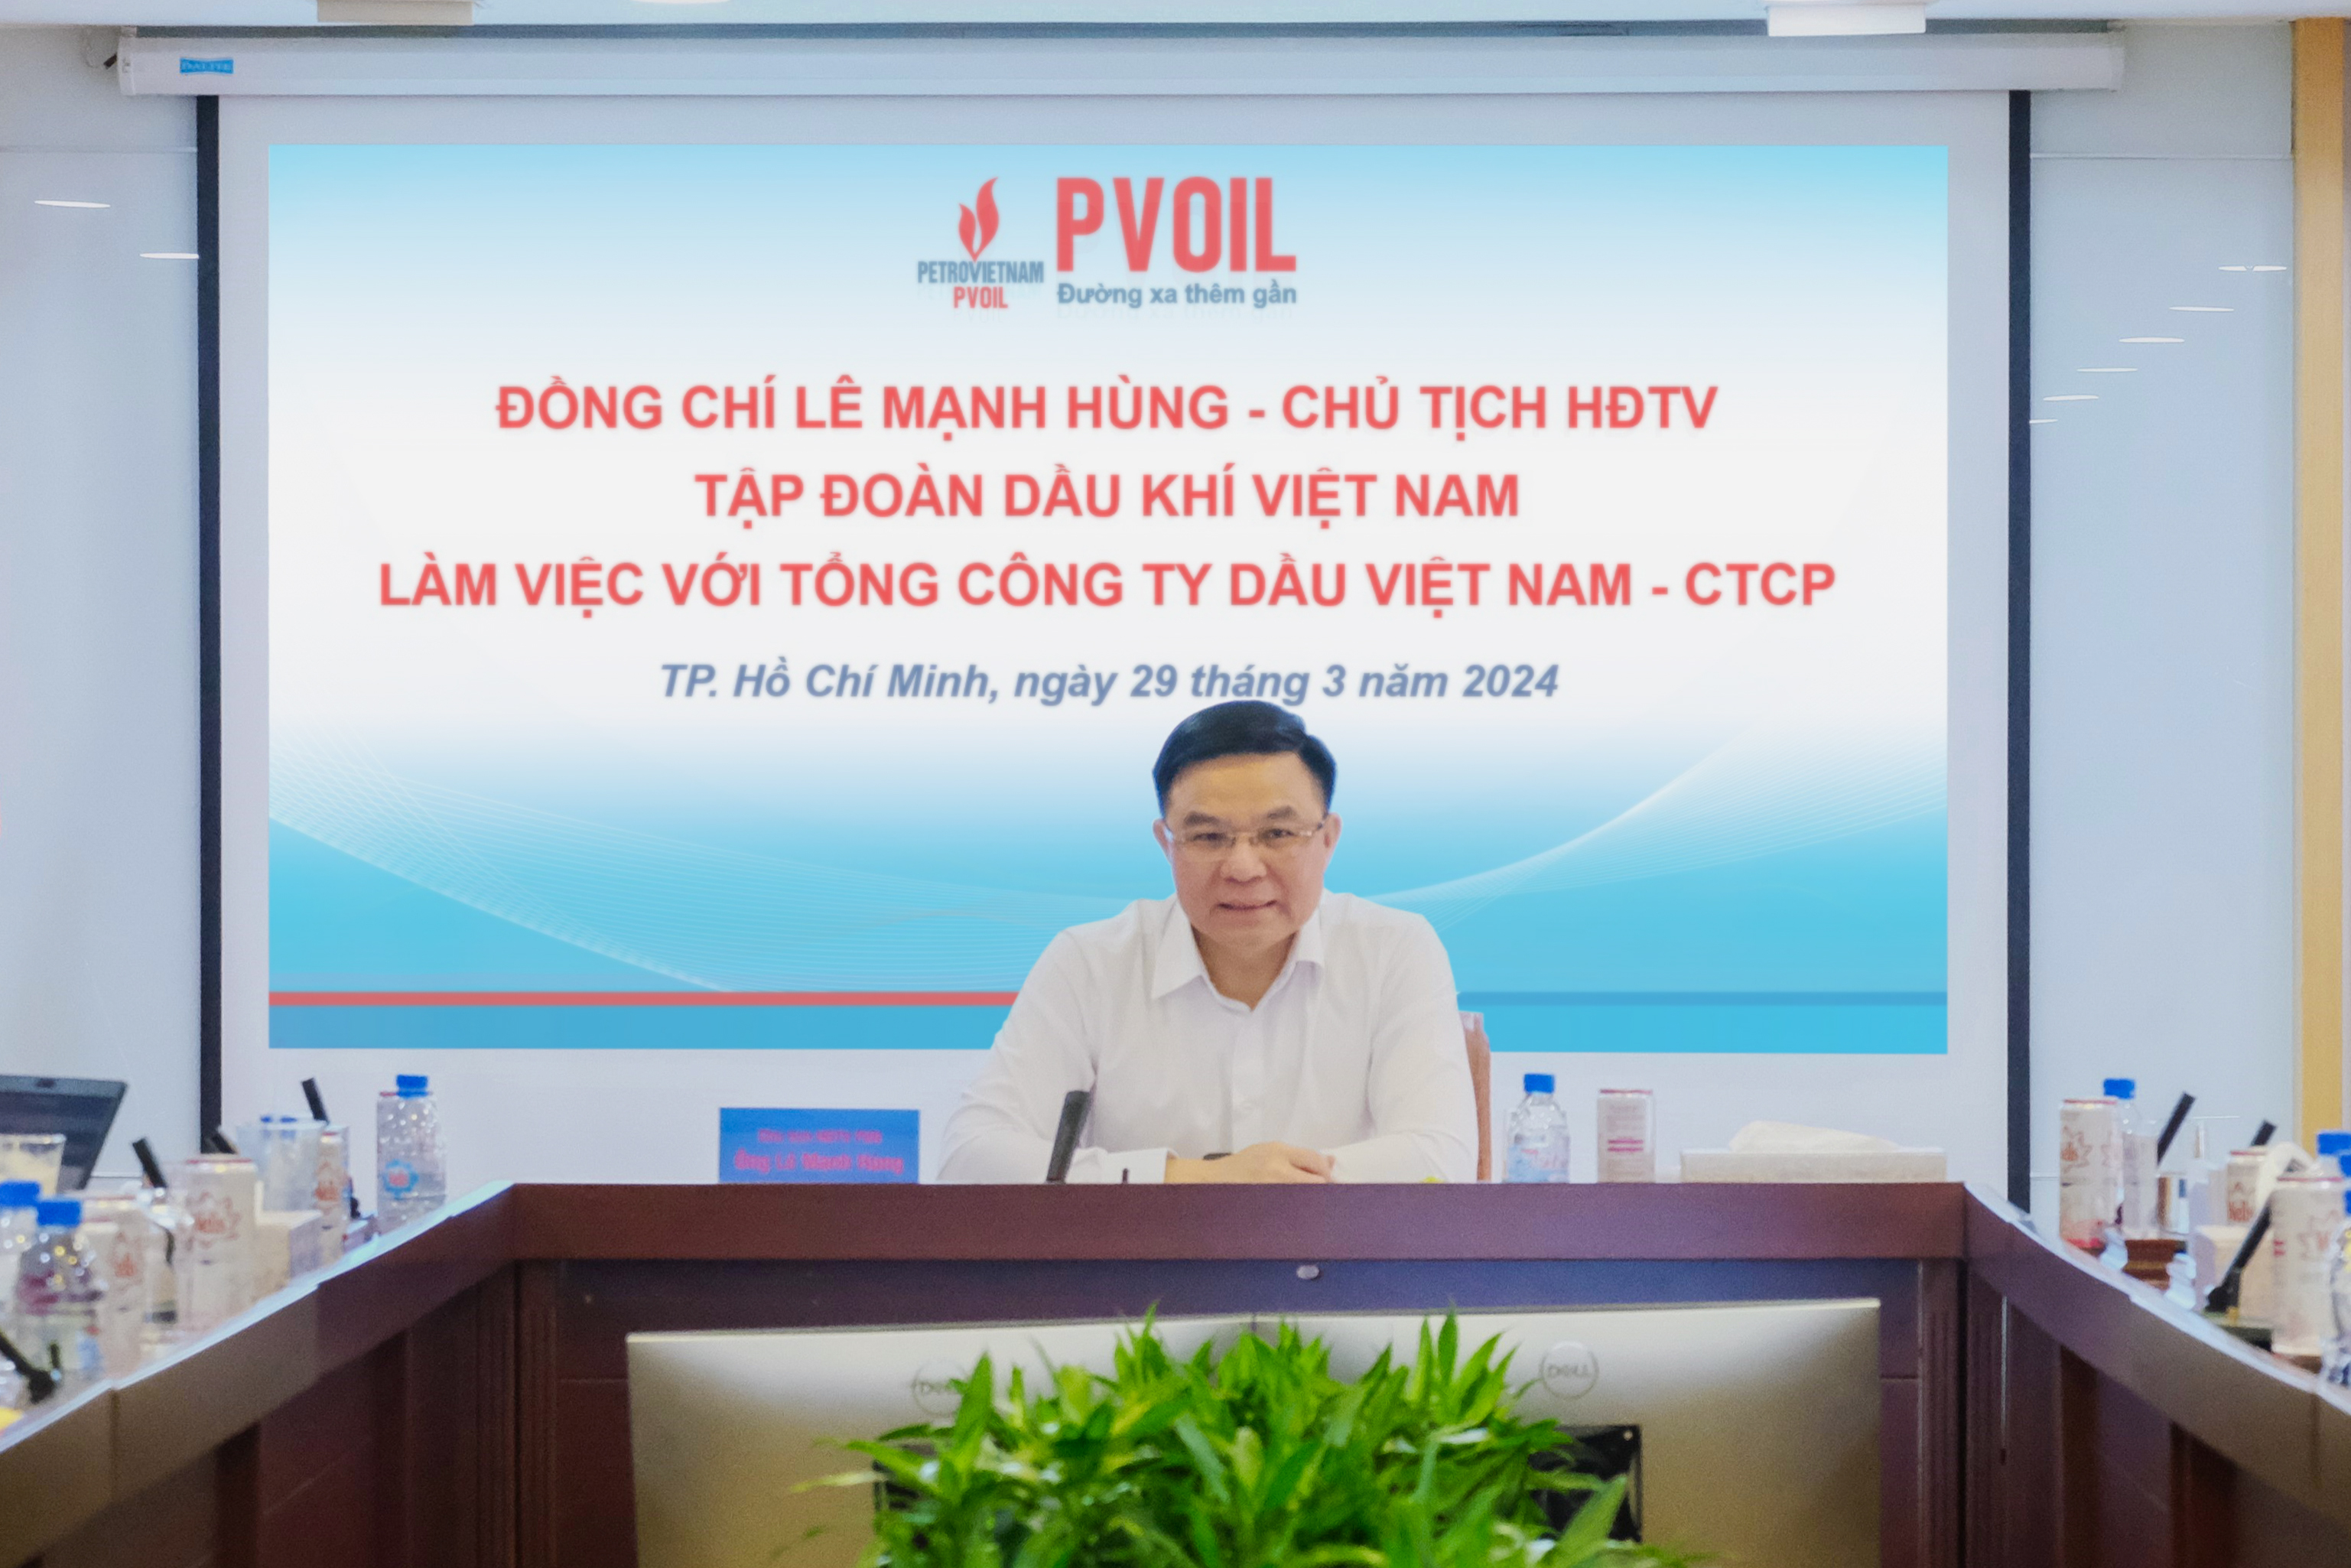 Mục tiêu phát triển của PVOIL: trở thành doanh nghiệp số một về chất lượng dịch vụ kinh doanh xăng dầu và phi xăng dầu